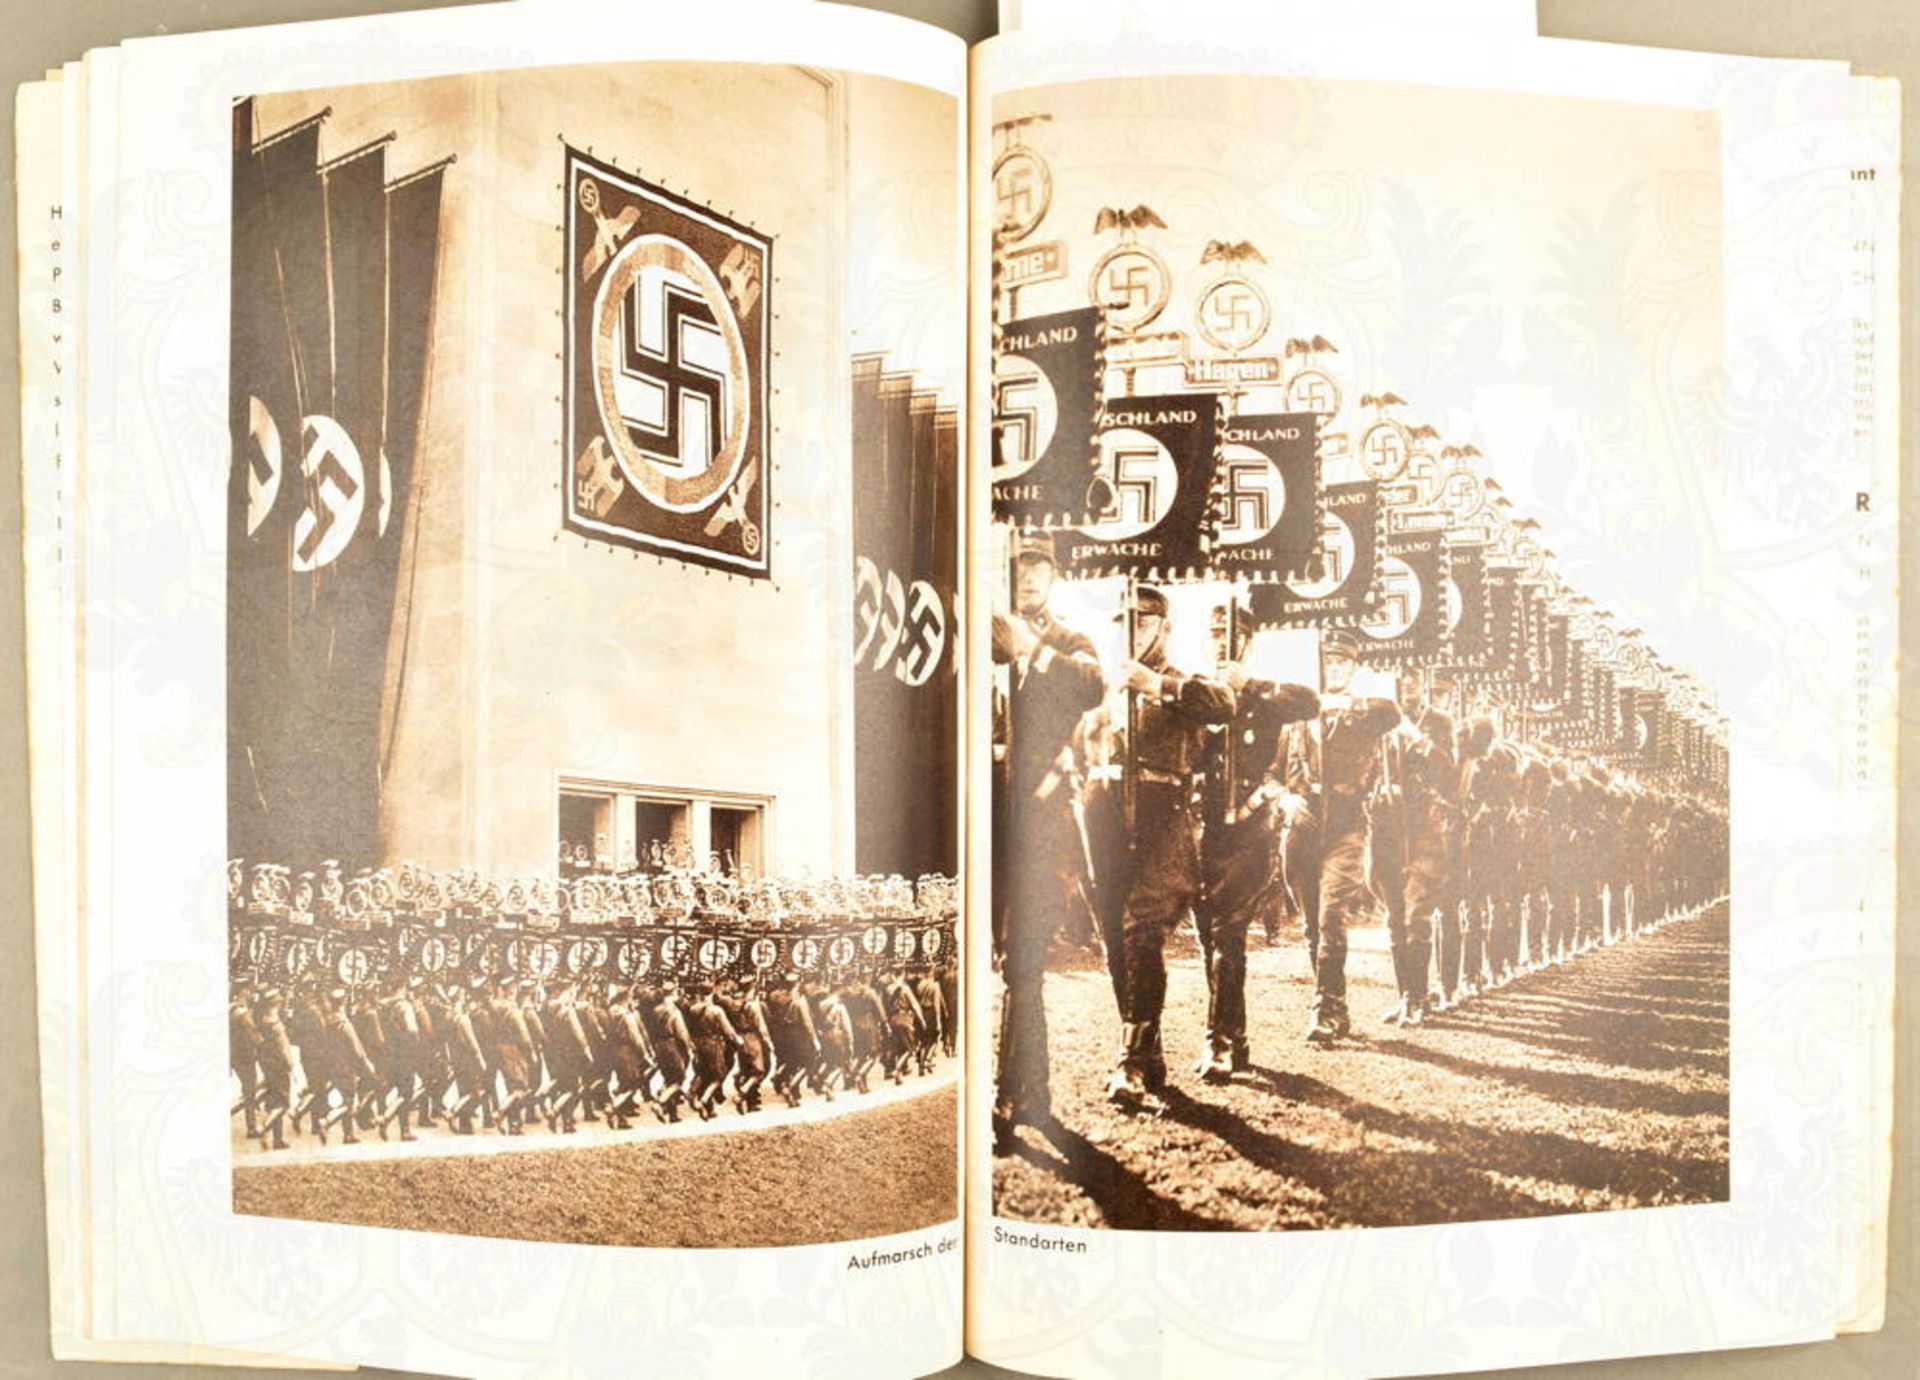 HOFFMANN-BILDBAND "PARTEITAG DER EHRE" 1936 - Bild 3 aus 4